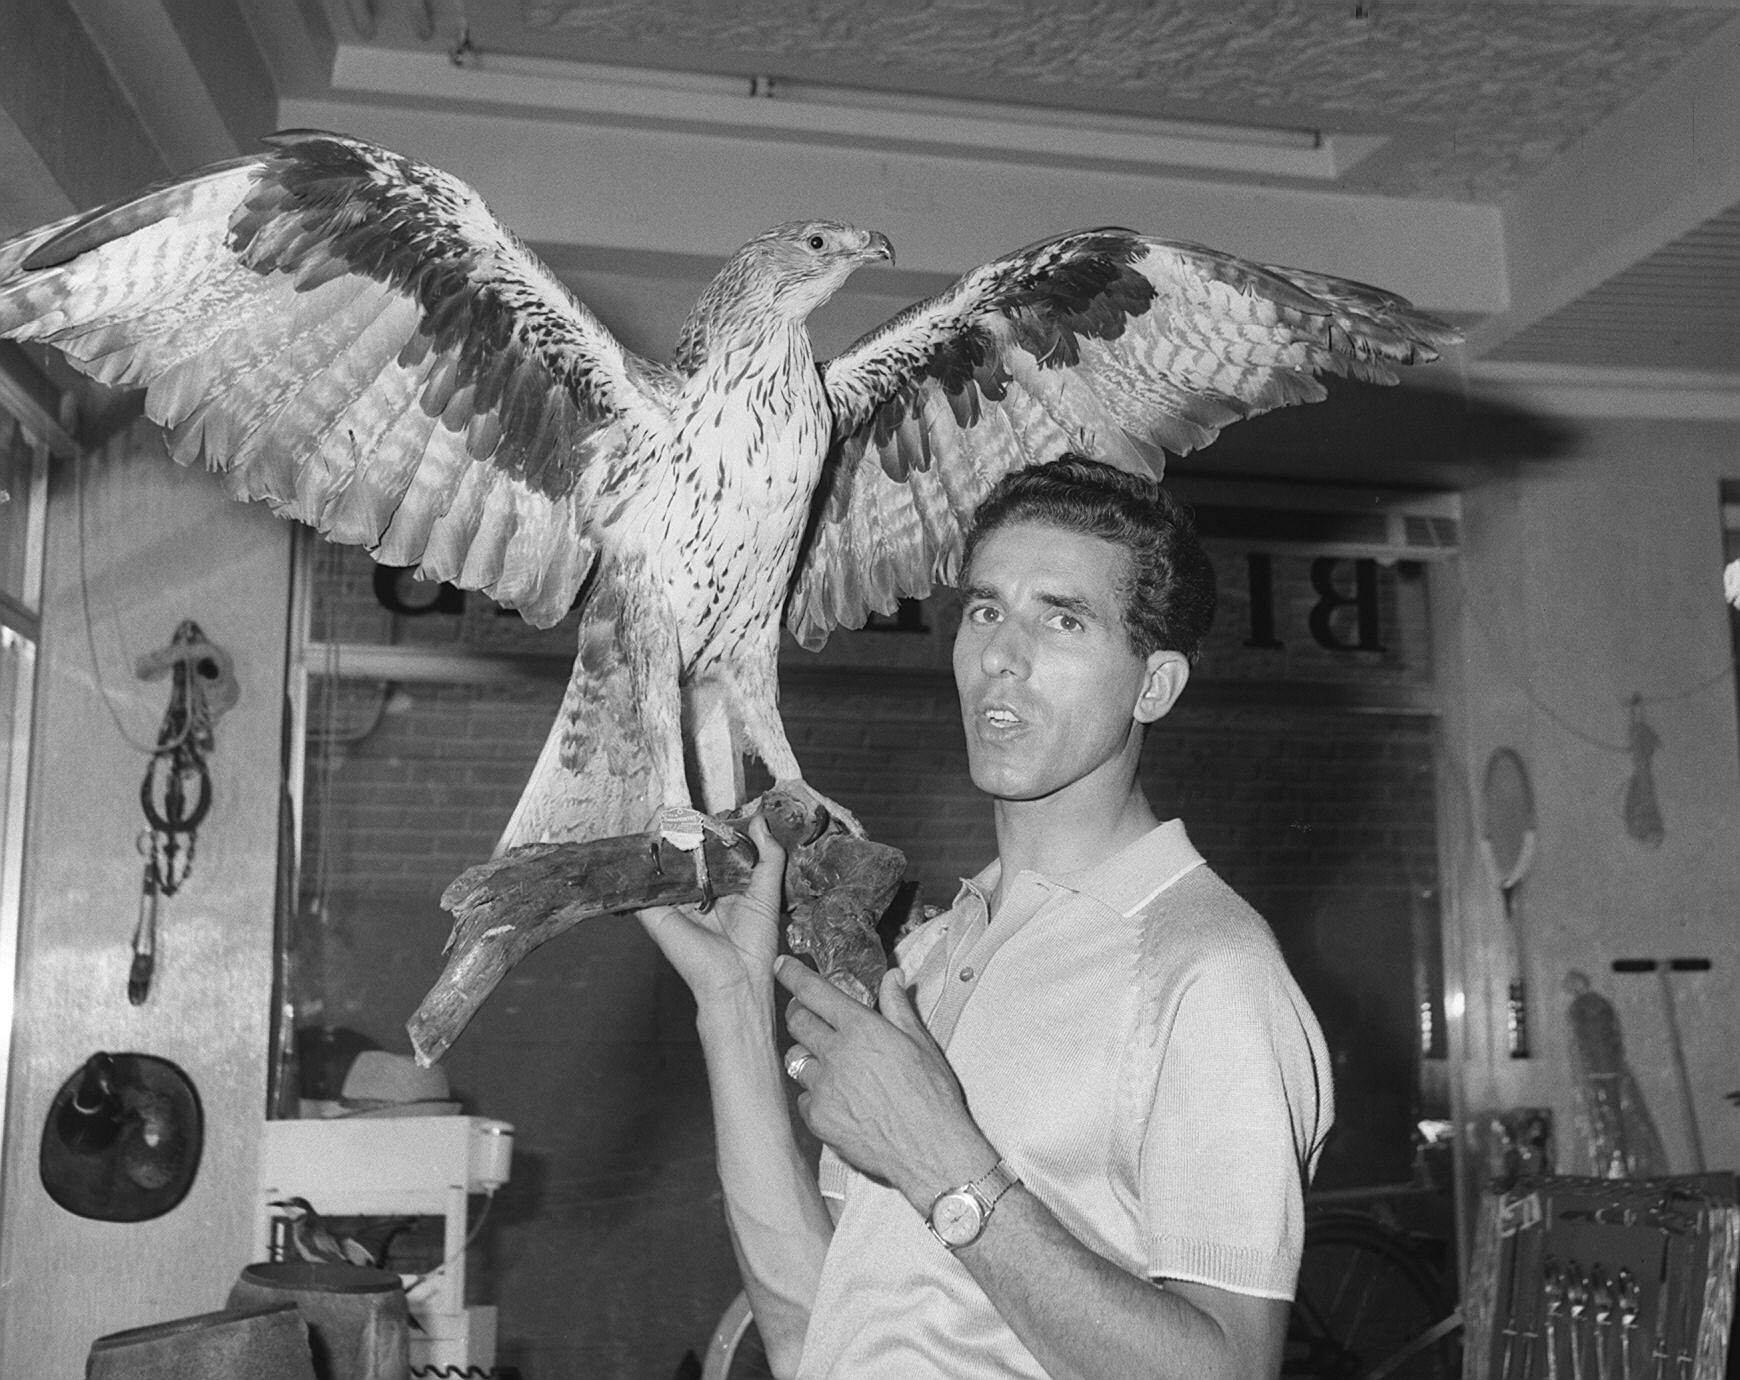 El ciclista posa con un águila disecada, en recuerdo de su mote 'El águila de Toledo', en el año 1967 en su tienda de deportes en Toledo.